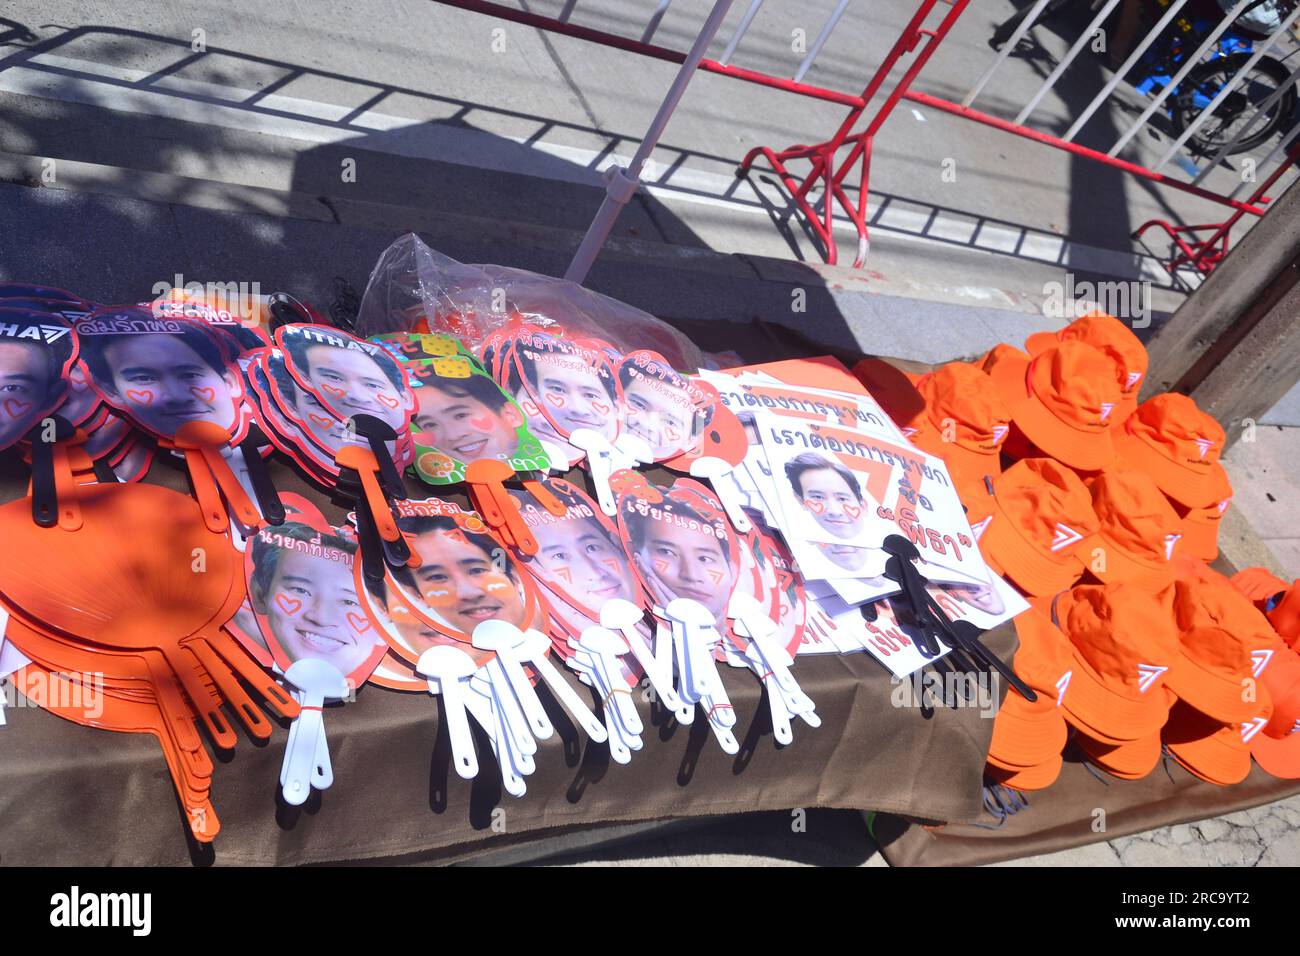 Les marchandises en vente sur l'un des nombreux étals de marché à proximité présentent l'image de Pita Limjaroenrat et le thème orange. Manifestation près du Parlement, Bangkok, Thaïlande. Le Parlement thaïlandais vote le 13 juillet pour décider si le leader du parti Move Forward, Pita Limjaroenrat, qui a remporté le plus grand nombre de sièges aux élections de mai, peut devenir le nouveau Premier ministre, mettant fin à 9 ans de règne de l'ancien chef de l'armée Prayuth Chan-ocha. Banque D'Images